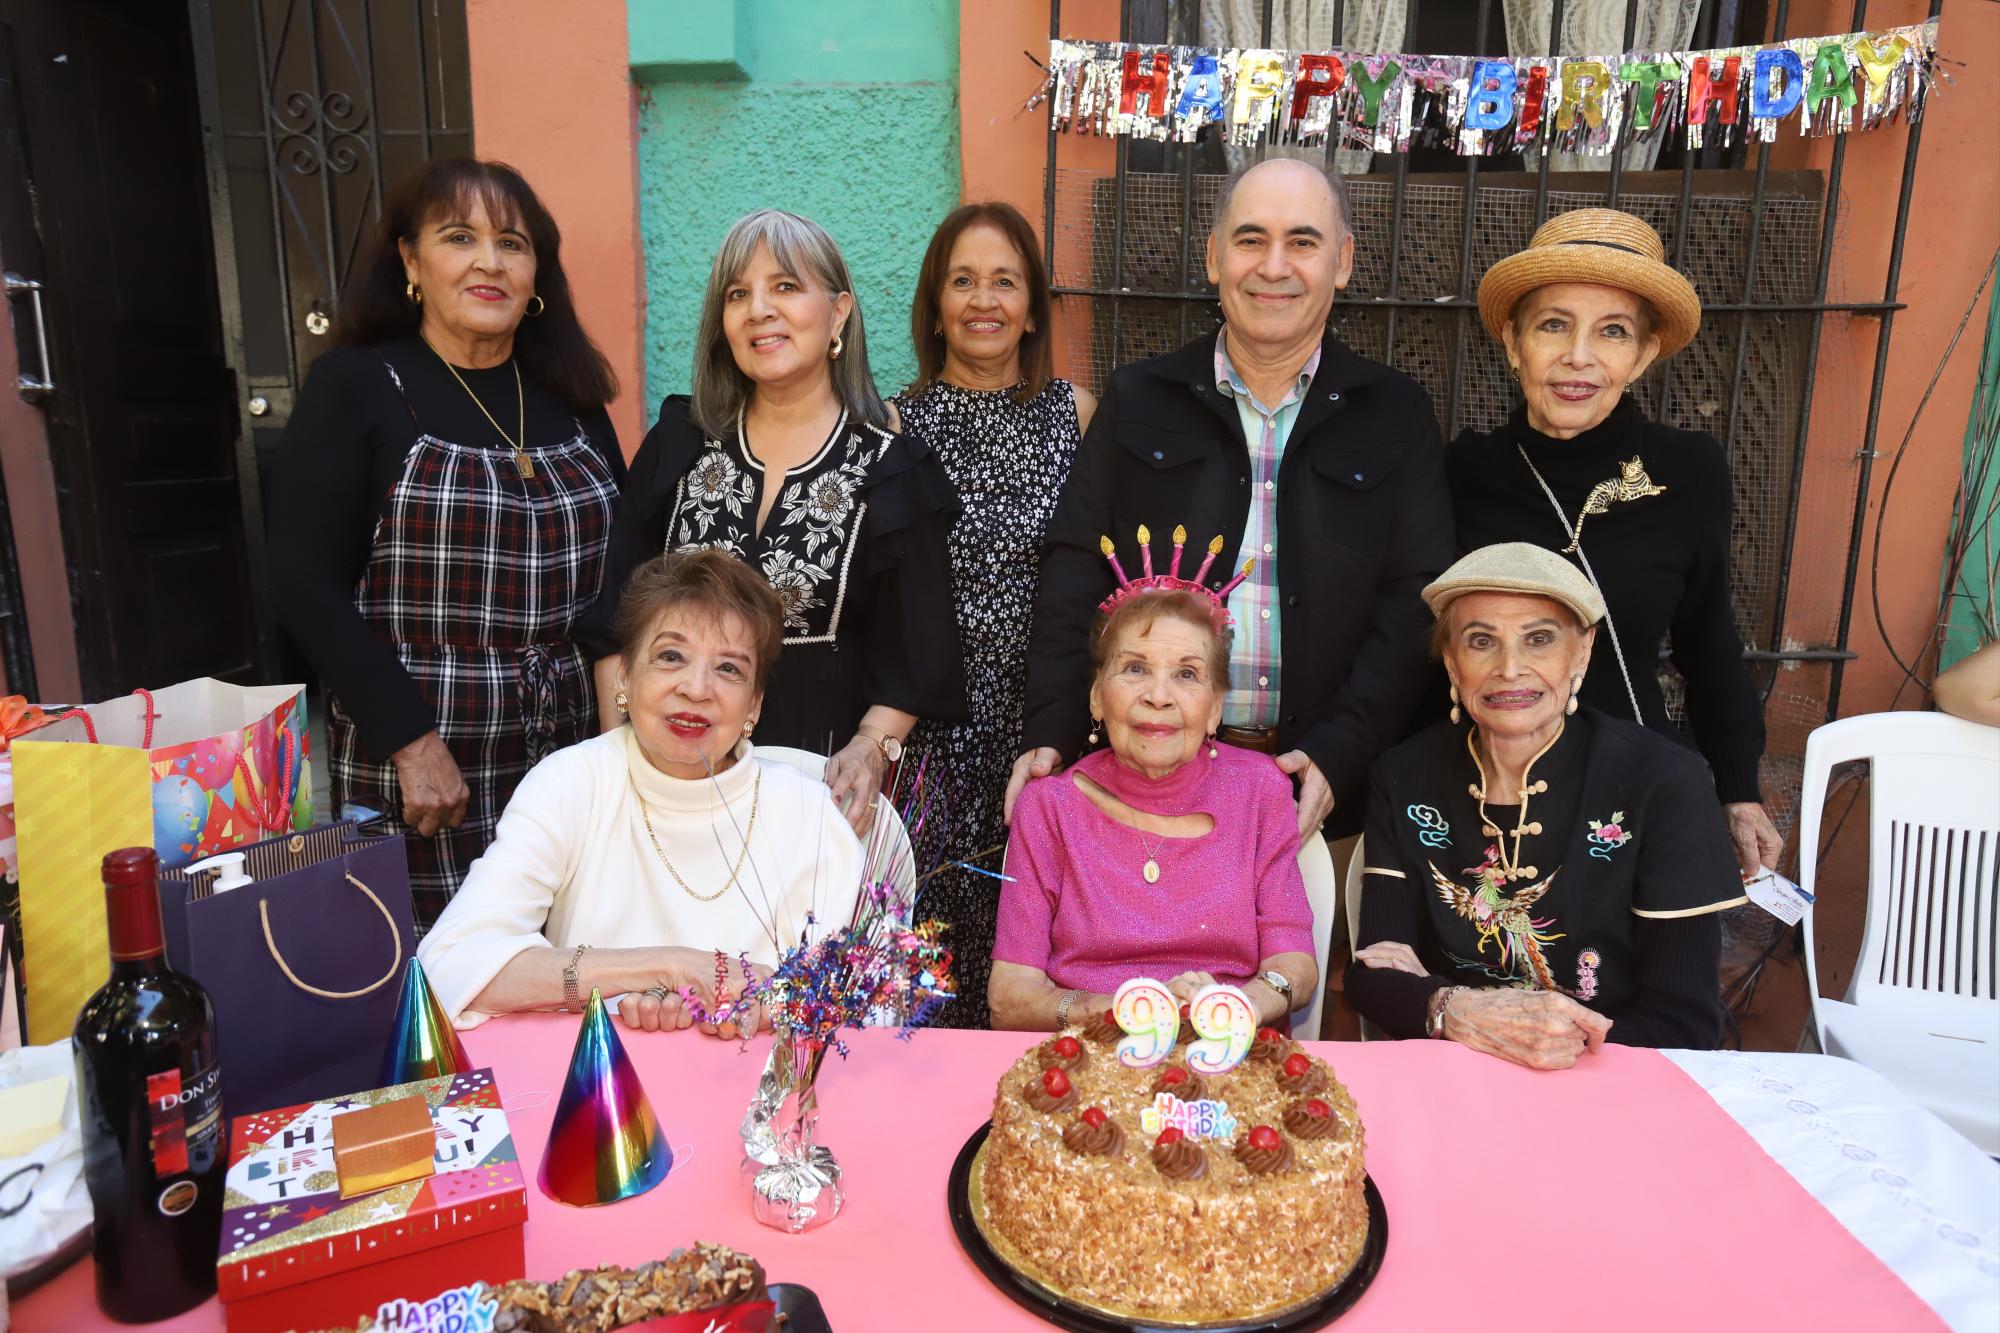 $!Josefa Venegas, Lupita Rodríguez, Elva Venegas, Rogelio Loaiza, Lola León, Laura Hilda Ung, Lolita Woo y Elia León.